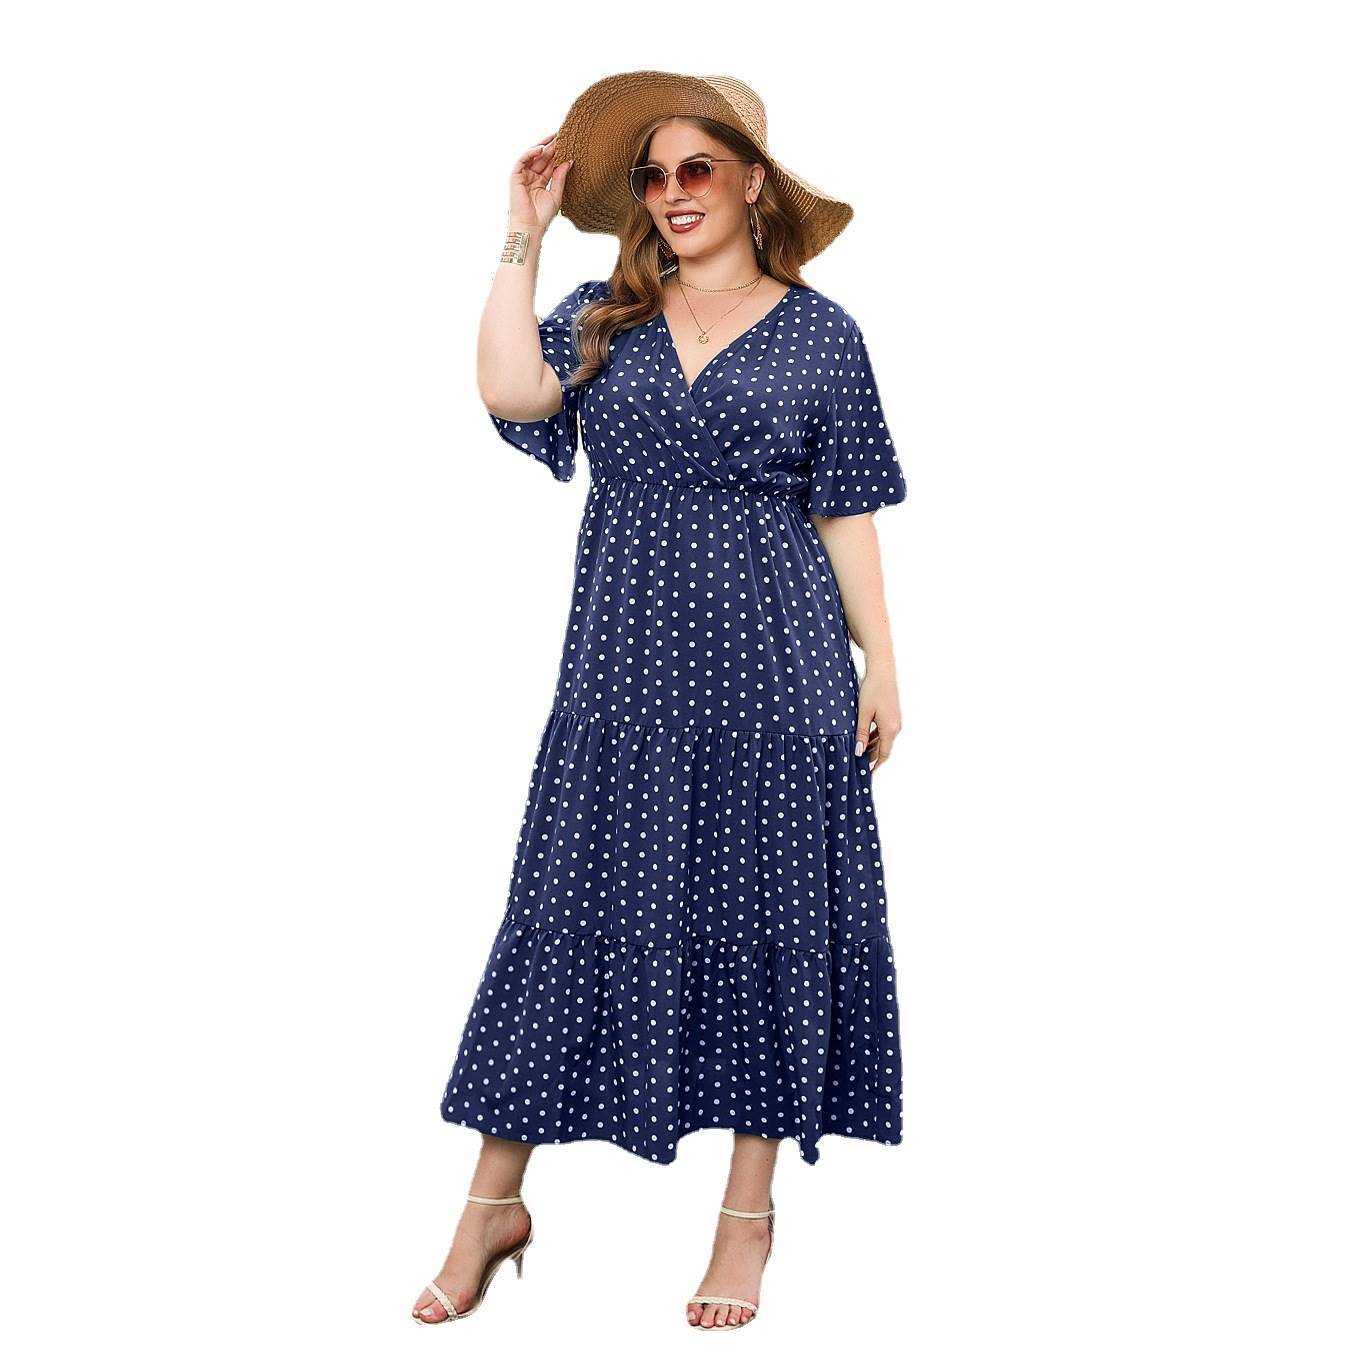 Plus-size Women's Polka Dot Dress